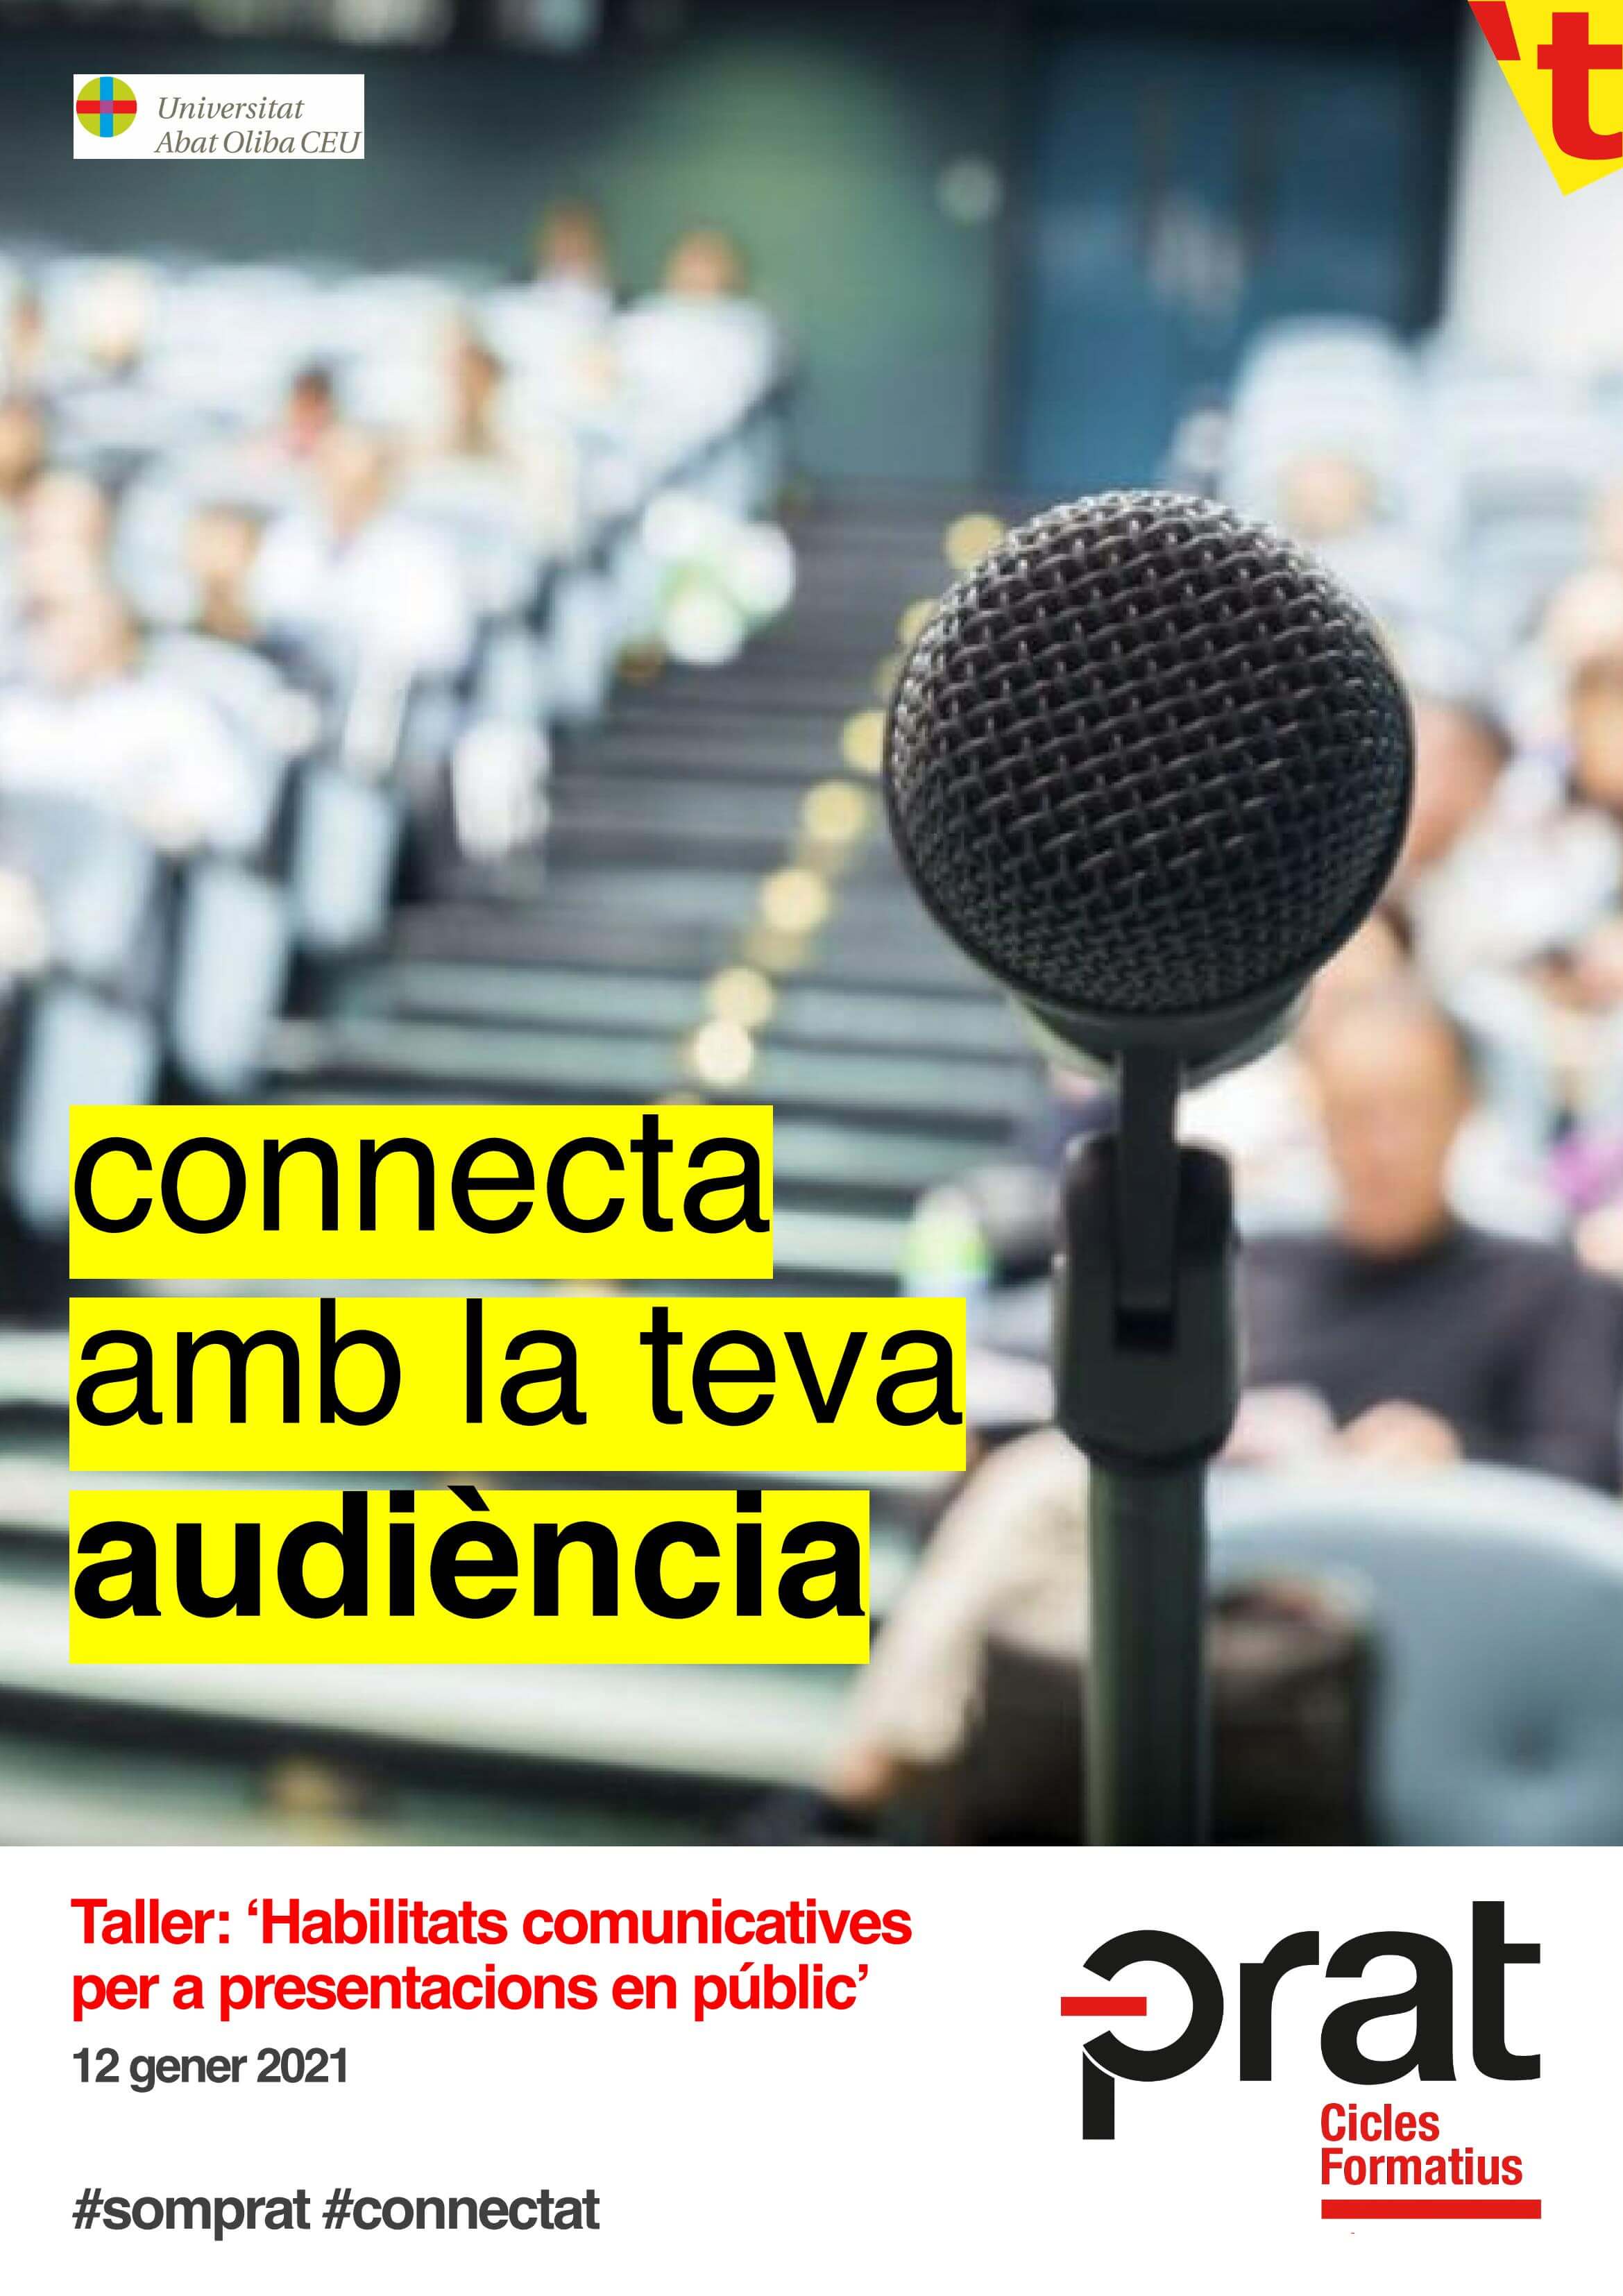 Taller habilitats comunicatives per a presentacions en públic